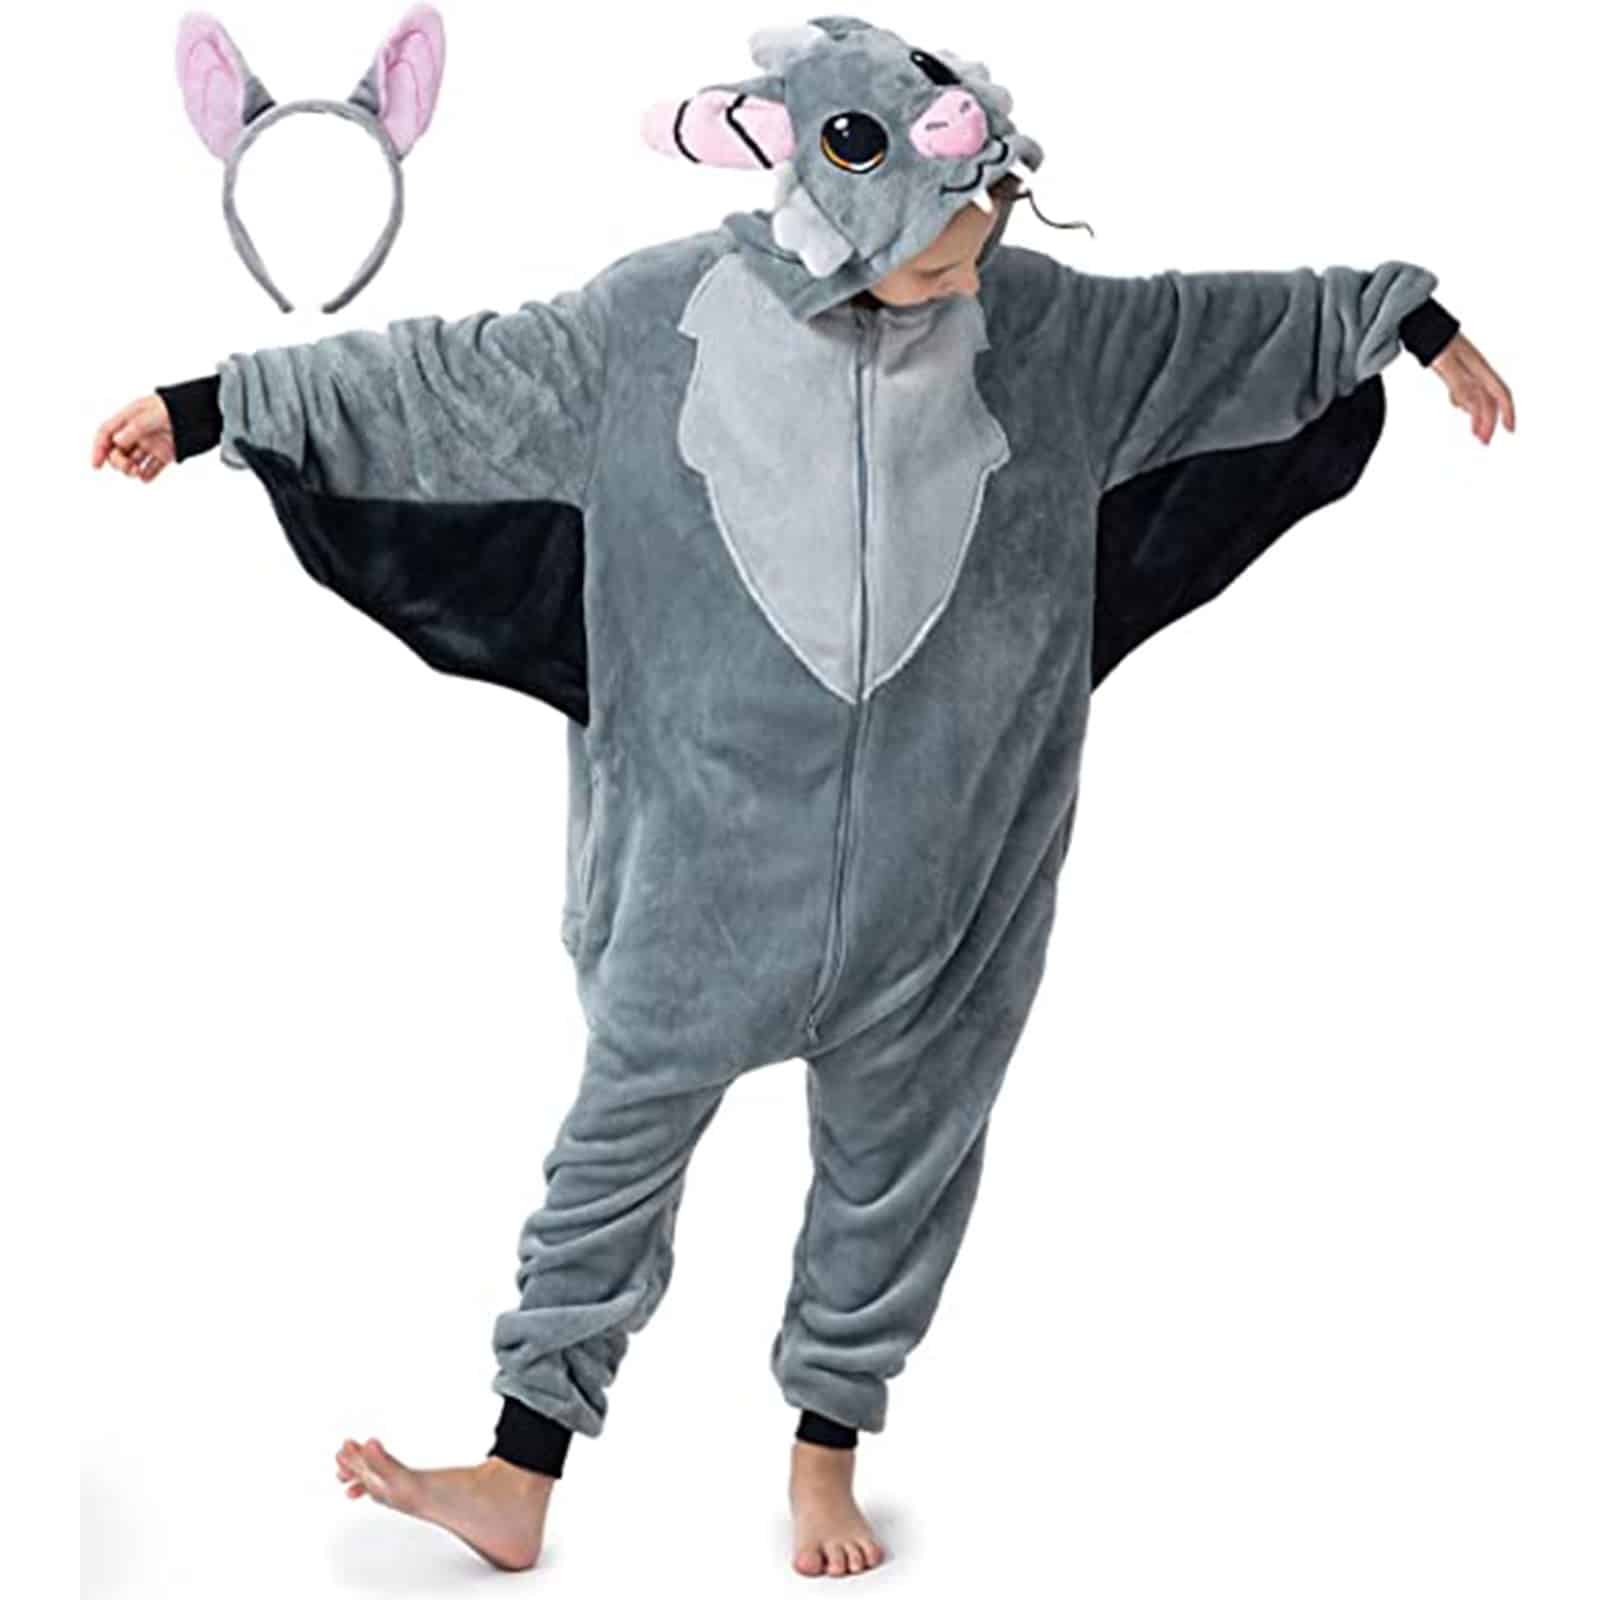 13 Kinder-Kostüm die - Vivi Fledermaus 90 corimori cm Wonderland Store - 110